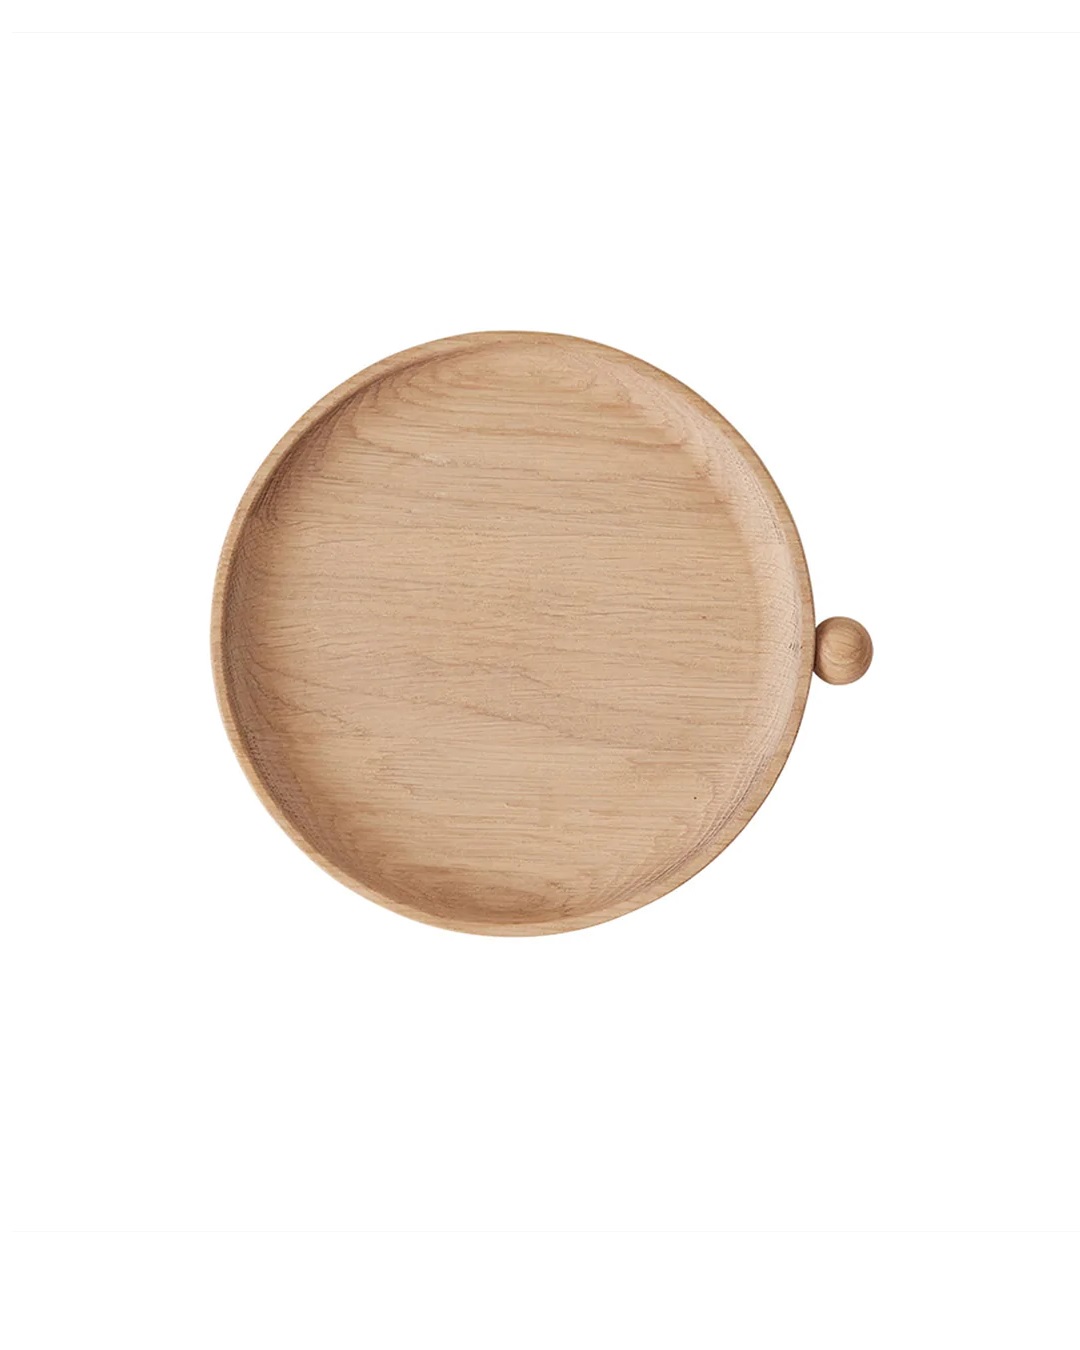 Inka wooden round tray